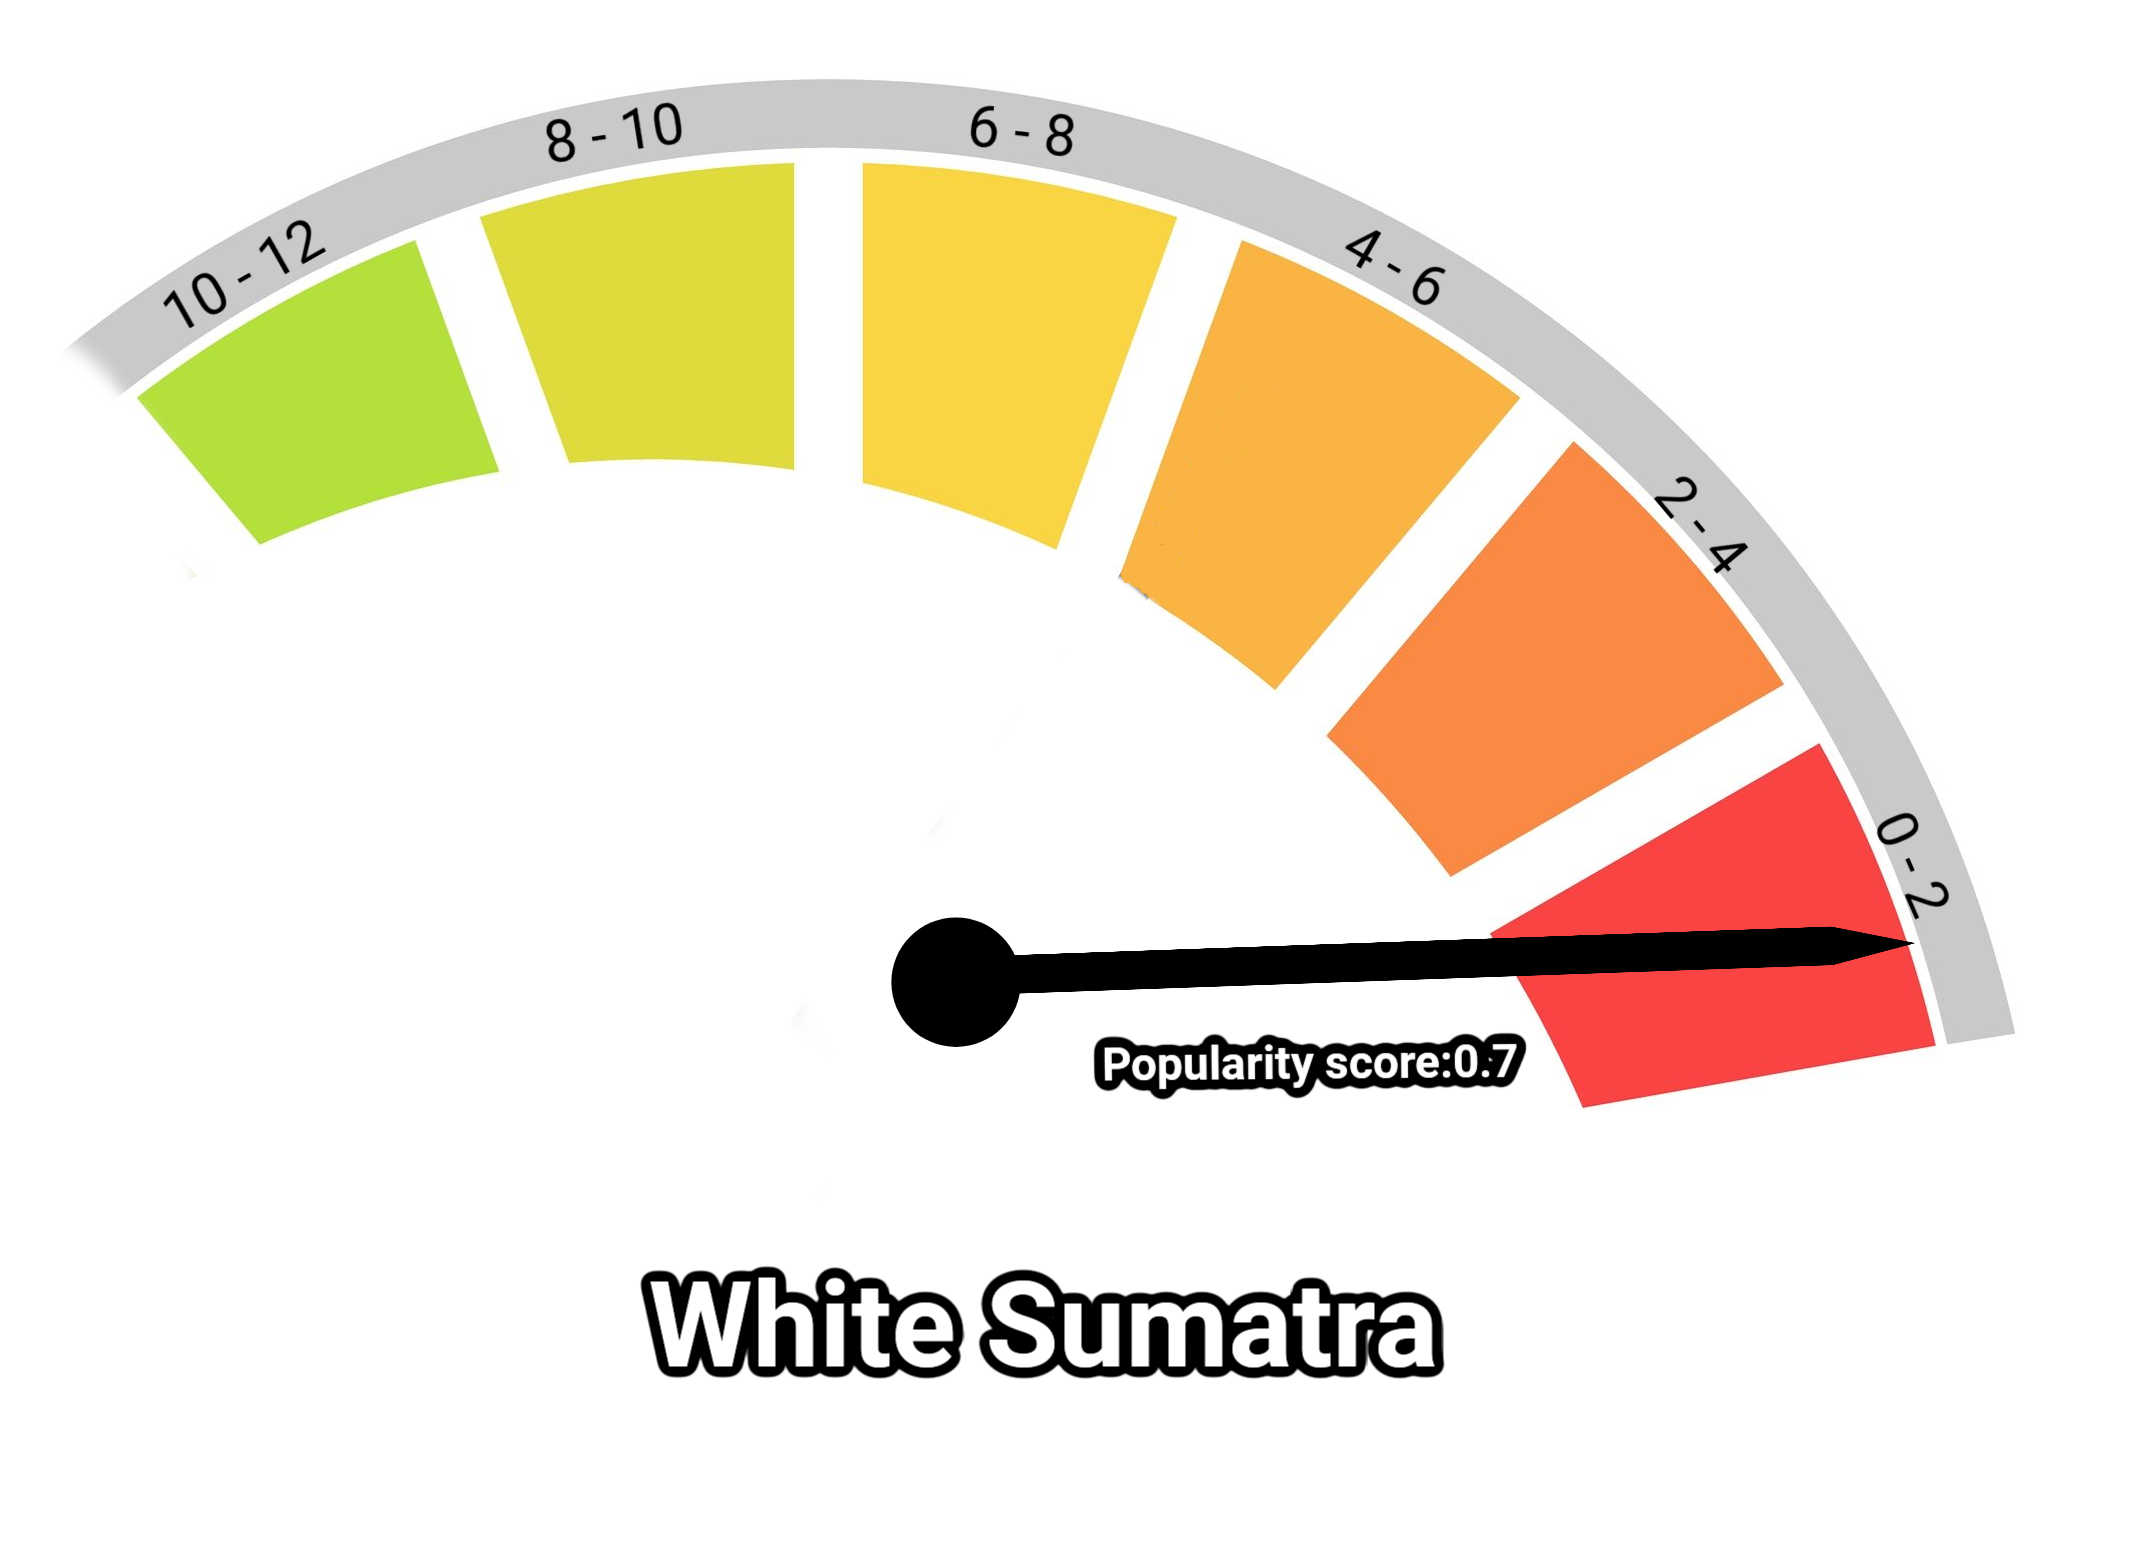 image of white sumatra kratom popularity score